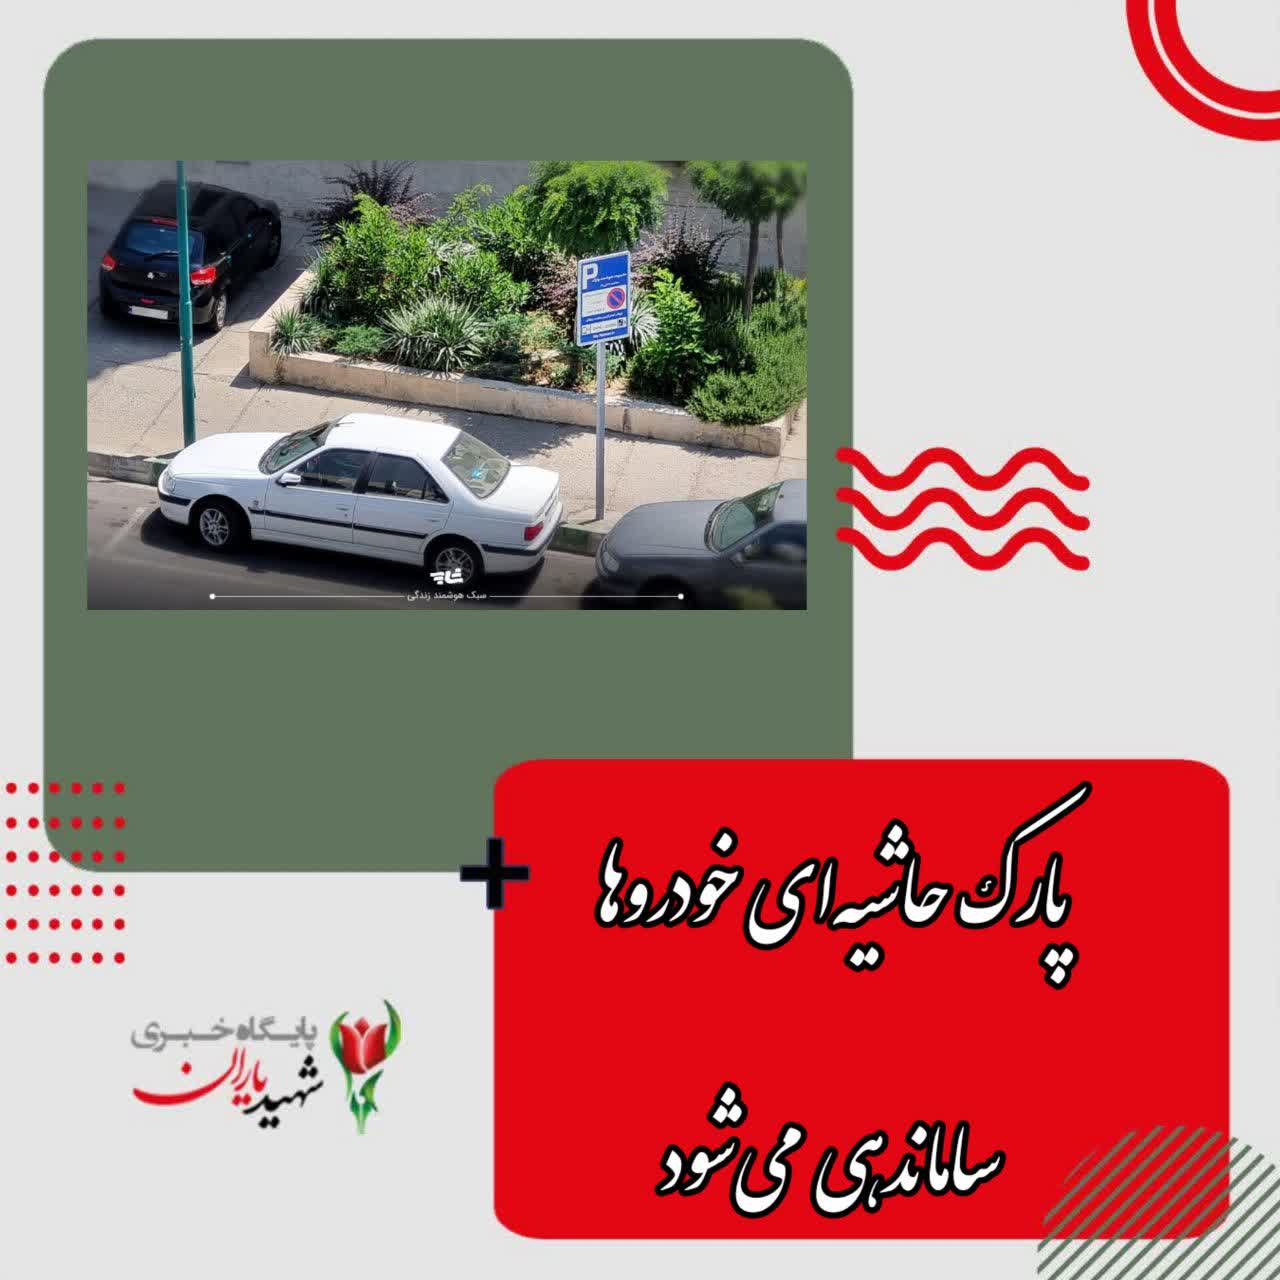 معاون حمل و نقل و ترافیک شهرداری اصفهان: